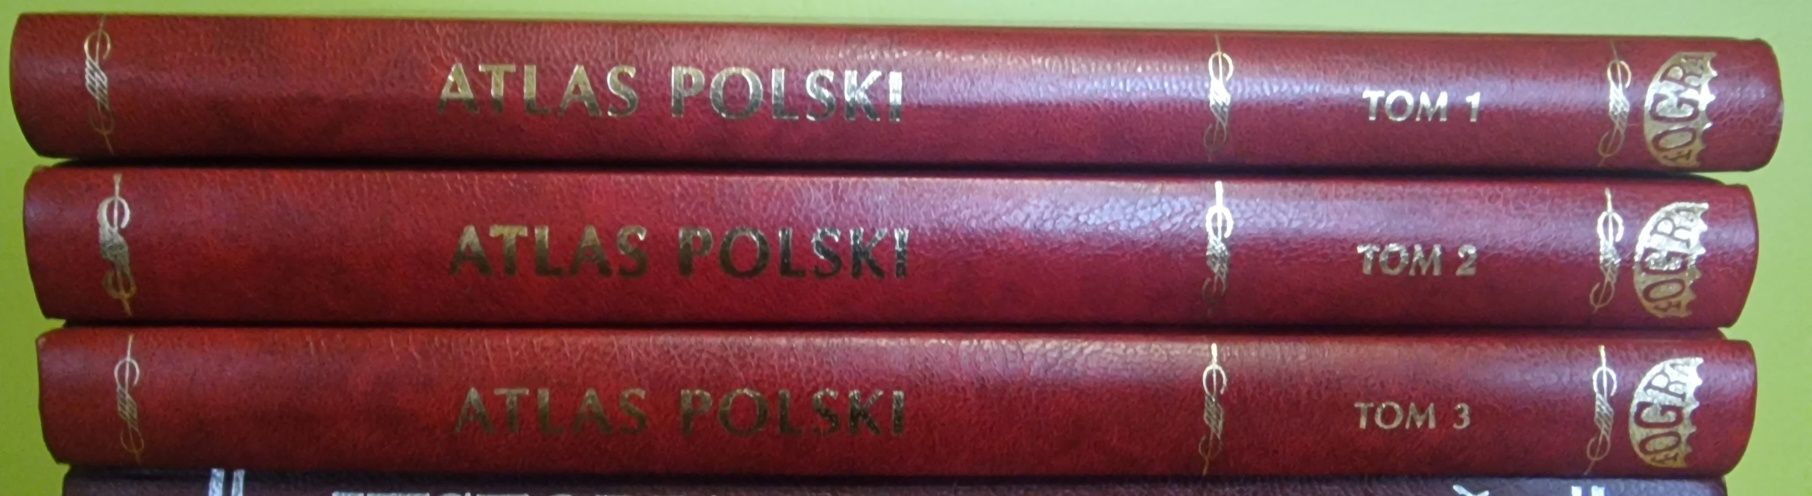 Atlas Polski 3 tomy - 80zł